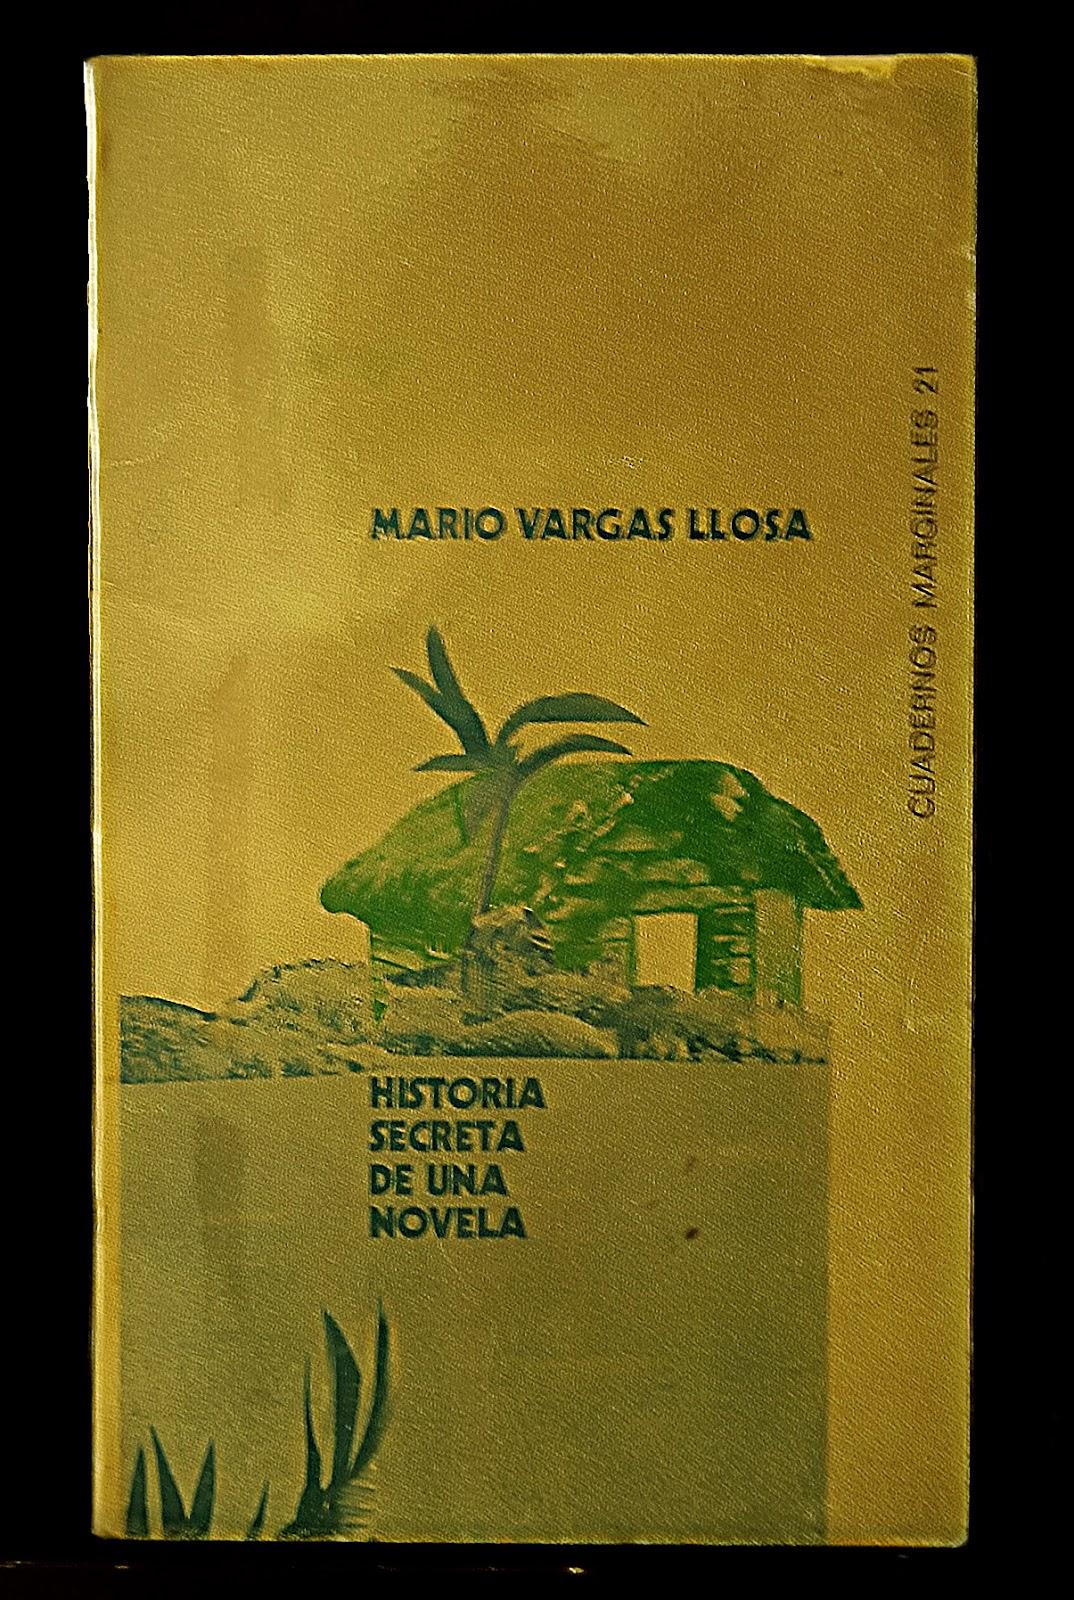 Historia secreta de una novela, Mario Vargas Llosa